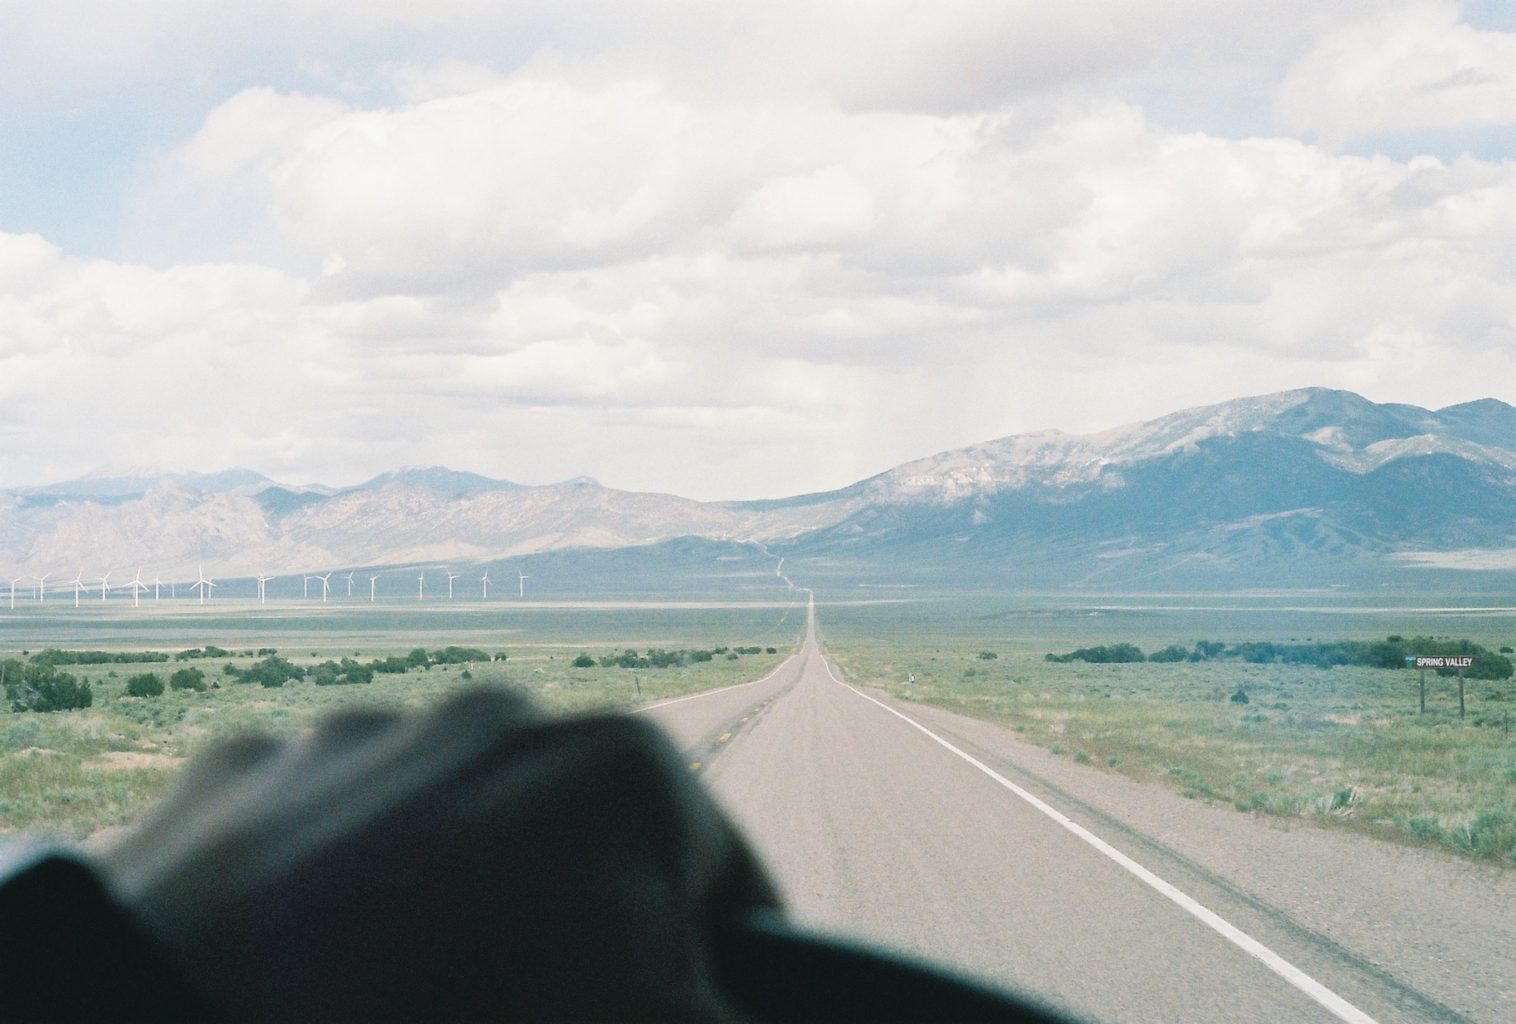 Driving to Utah - Interstate 50